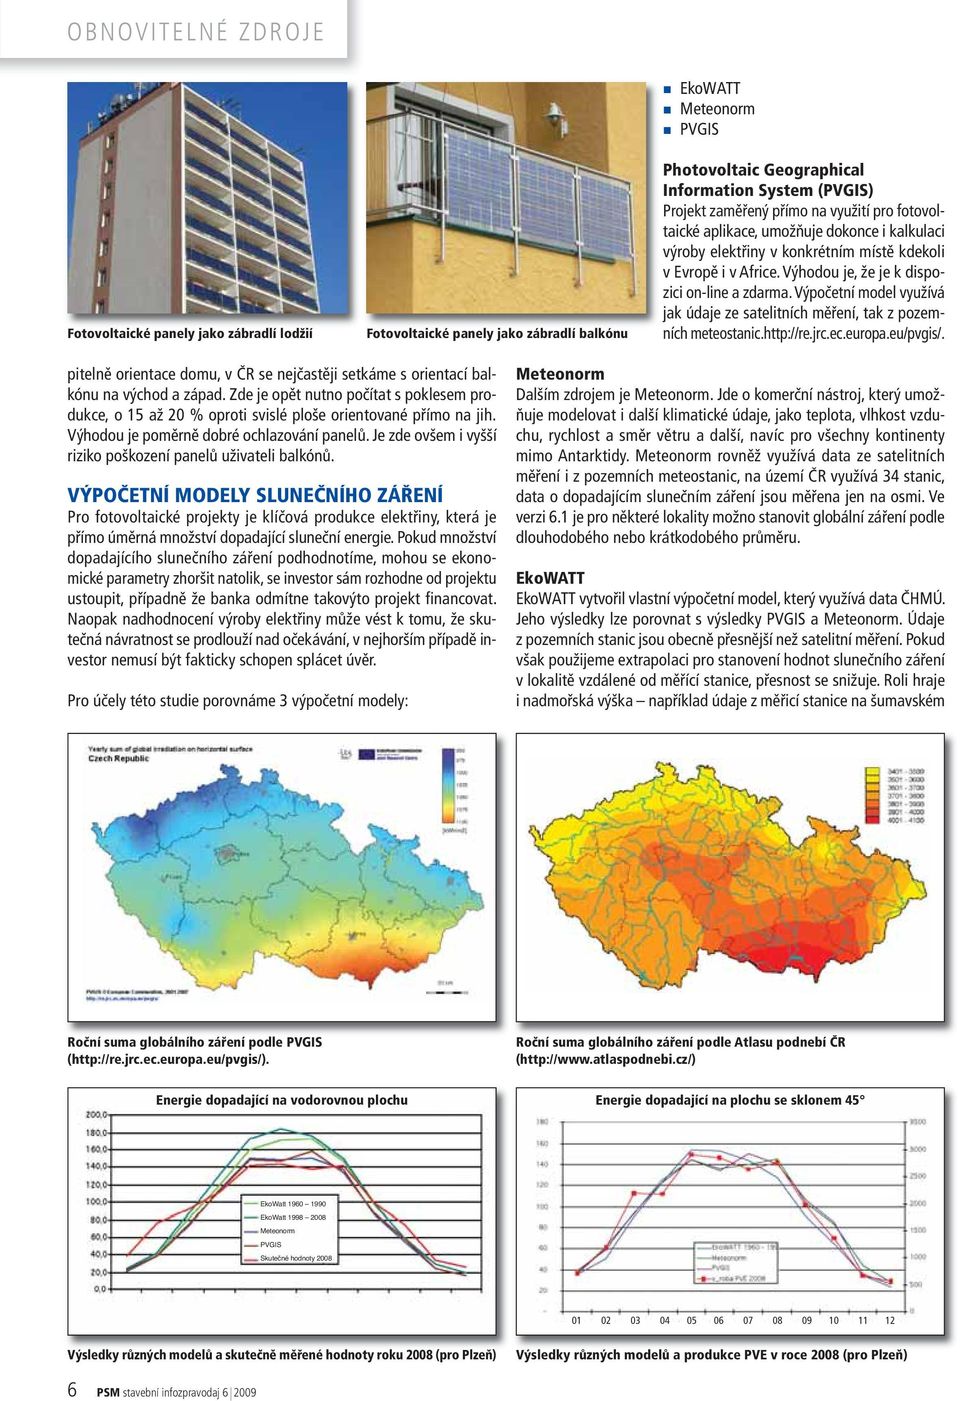 Výpočetní model využívá jak údaje ze satelitních měření, tak z pozemních meteostanic.http://re.jrc.ec.europa.eu/pvgis/.